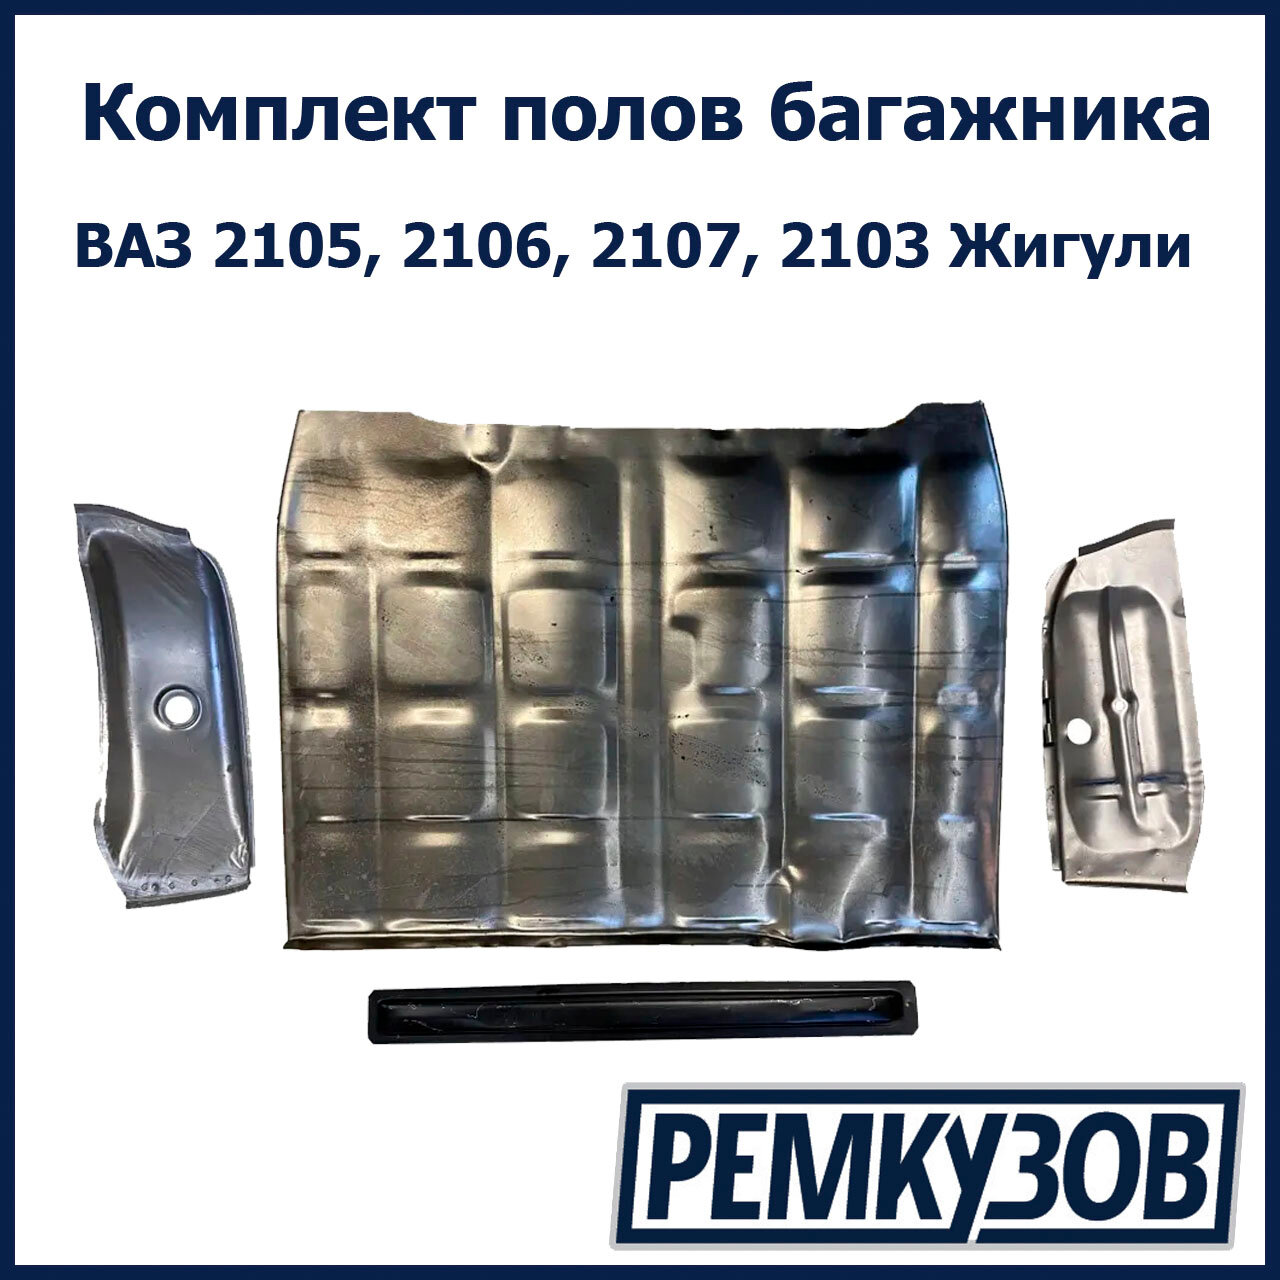 Комплект полов багажника ВАЗ 2105, 2106, 2107, 2103 Жигули